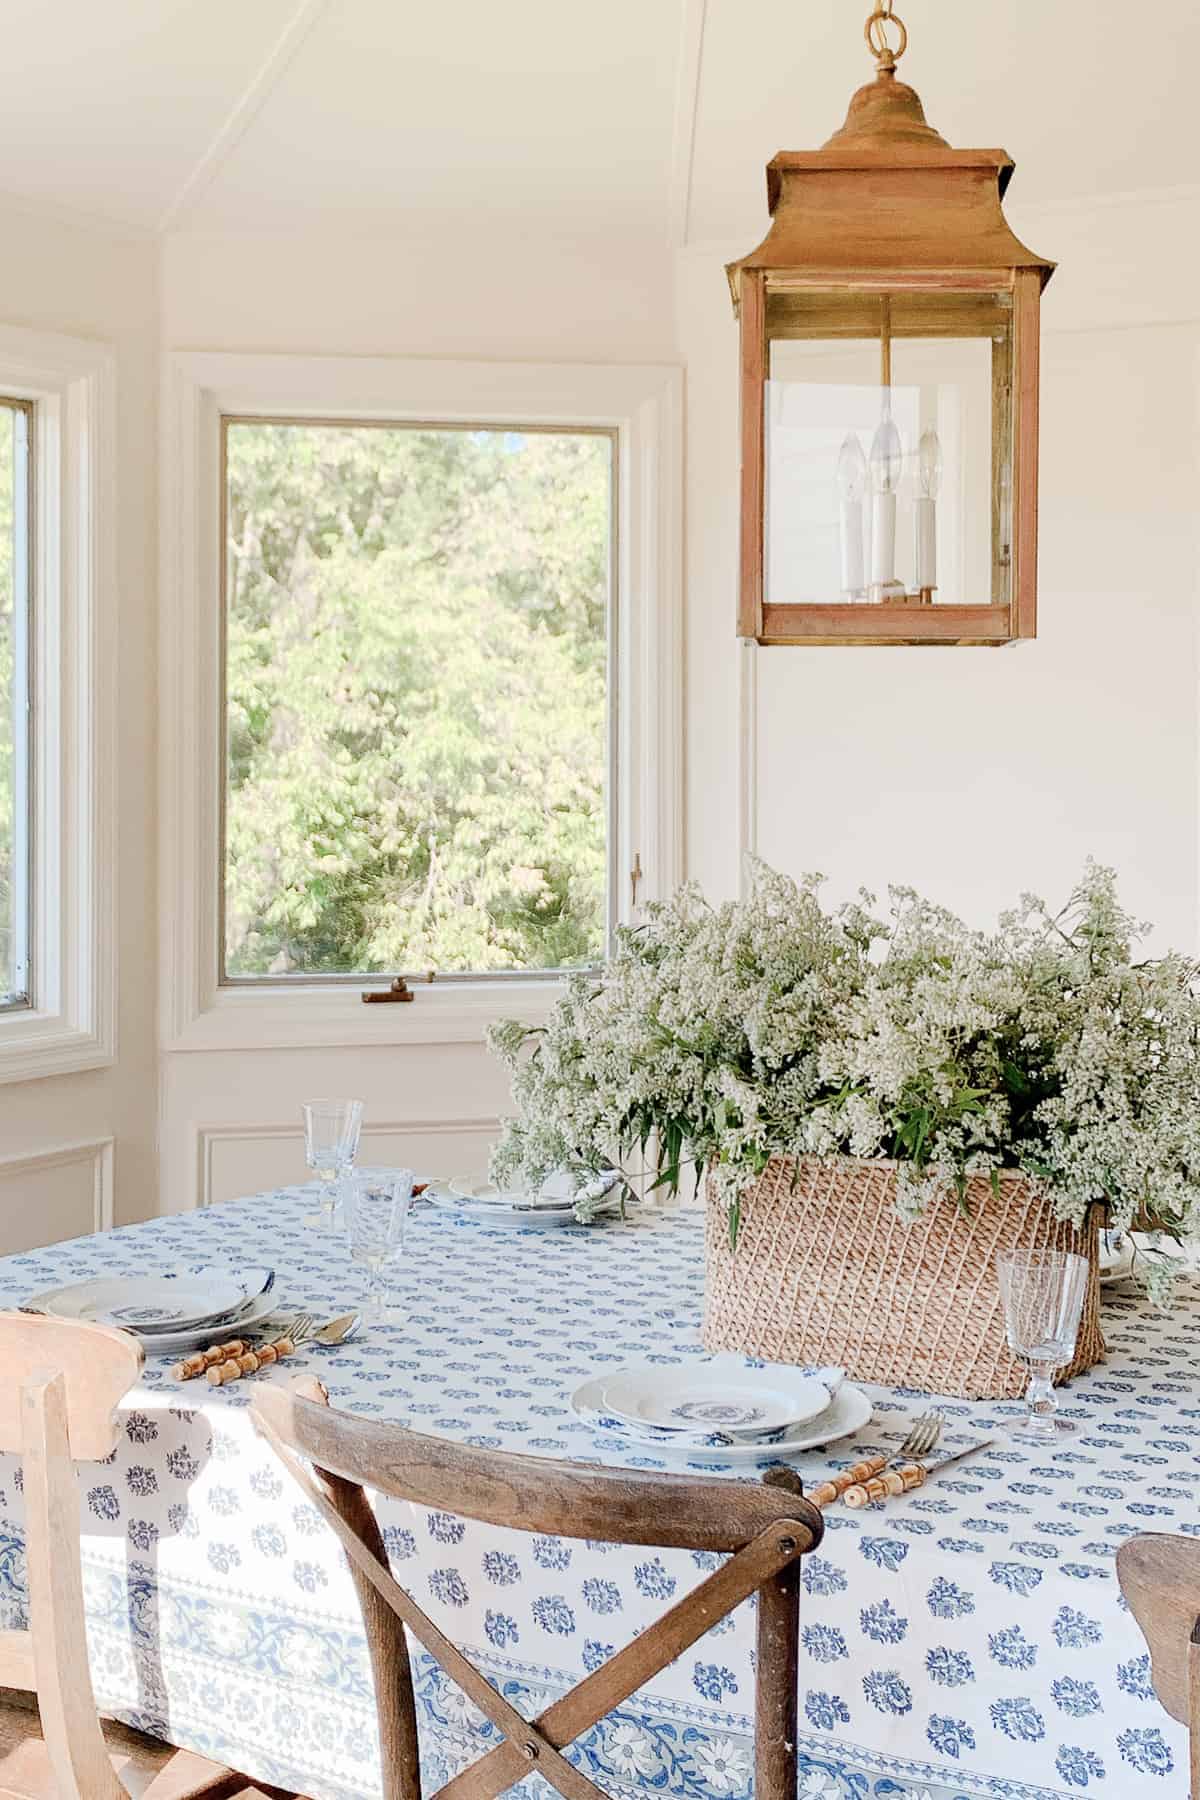 早餐房间有花篮和木版印花台布